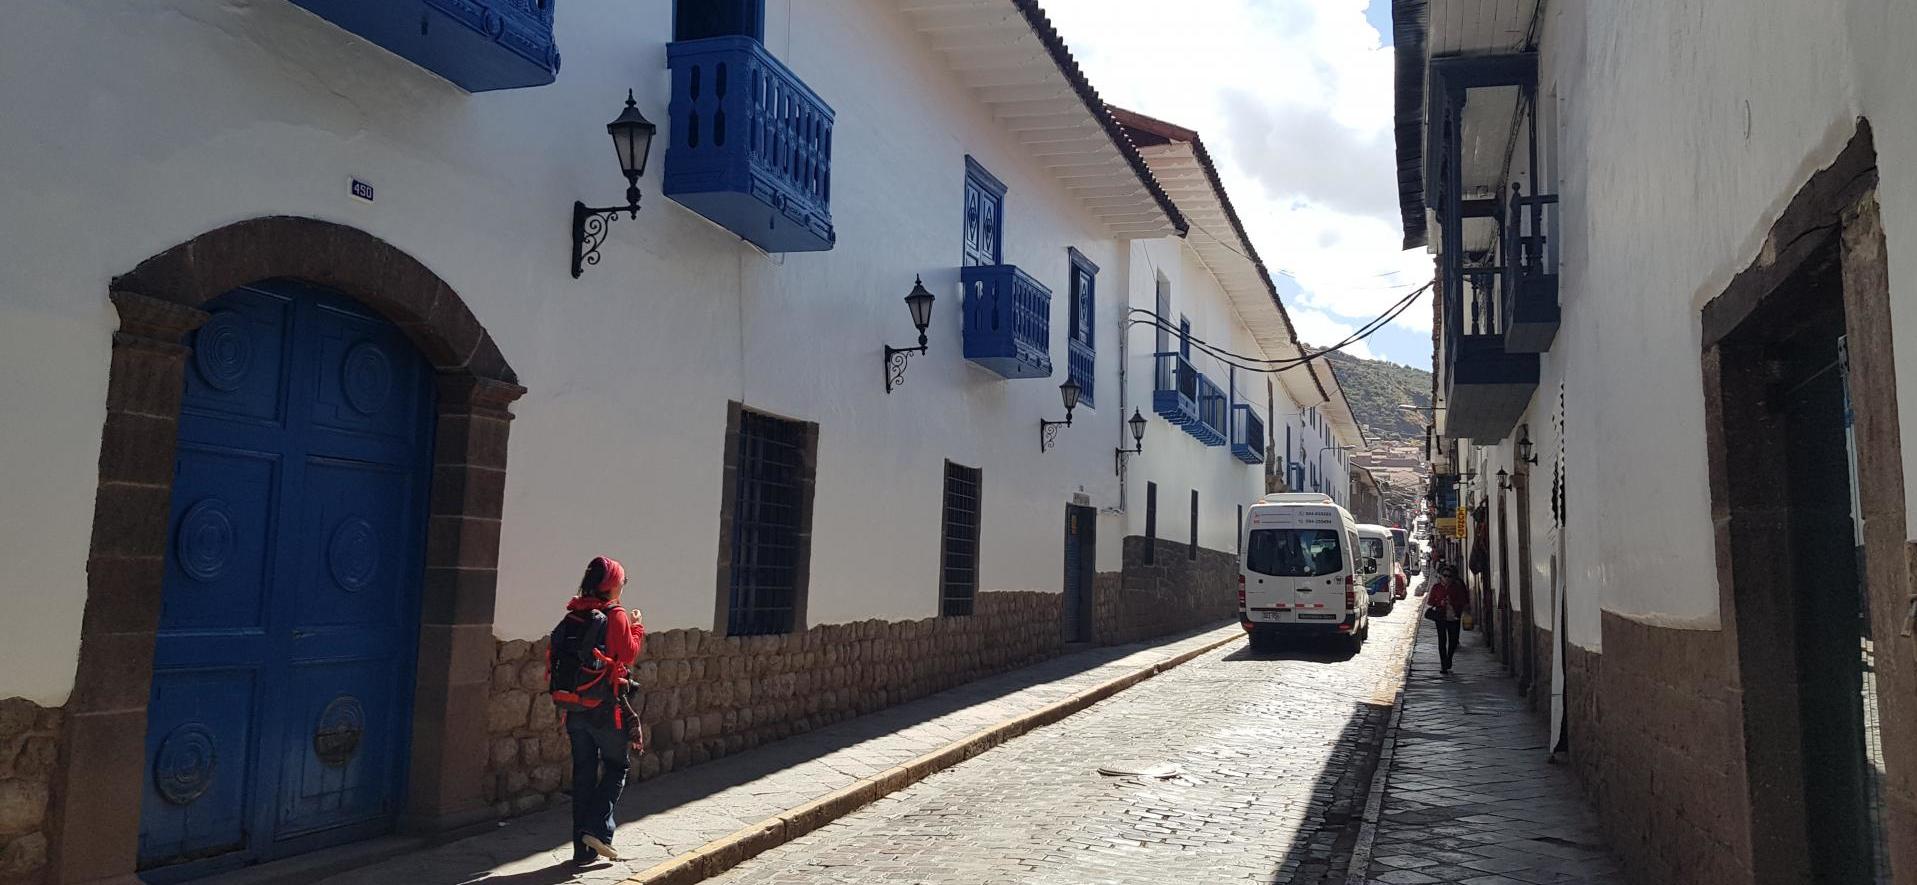 Alley of Cuzco